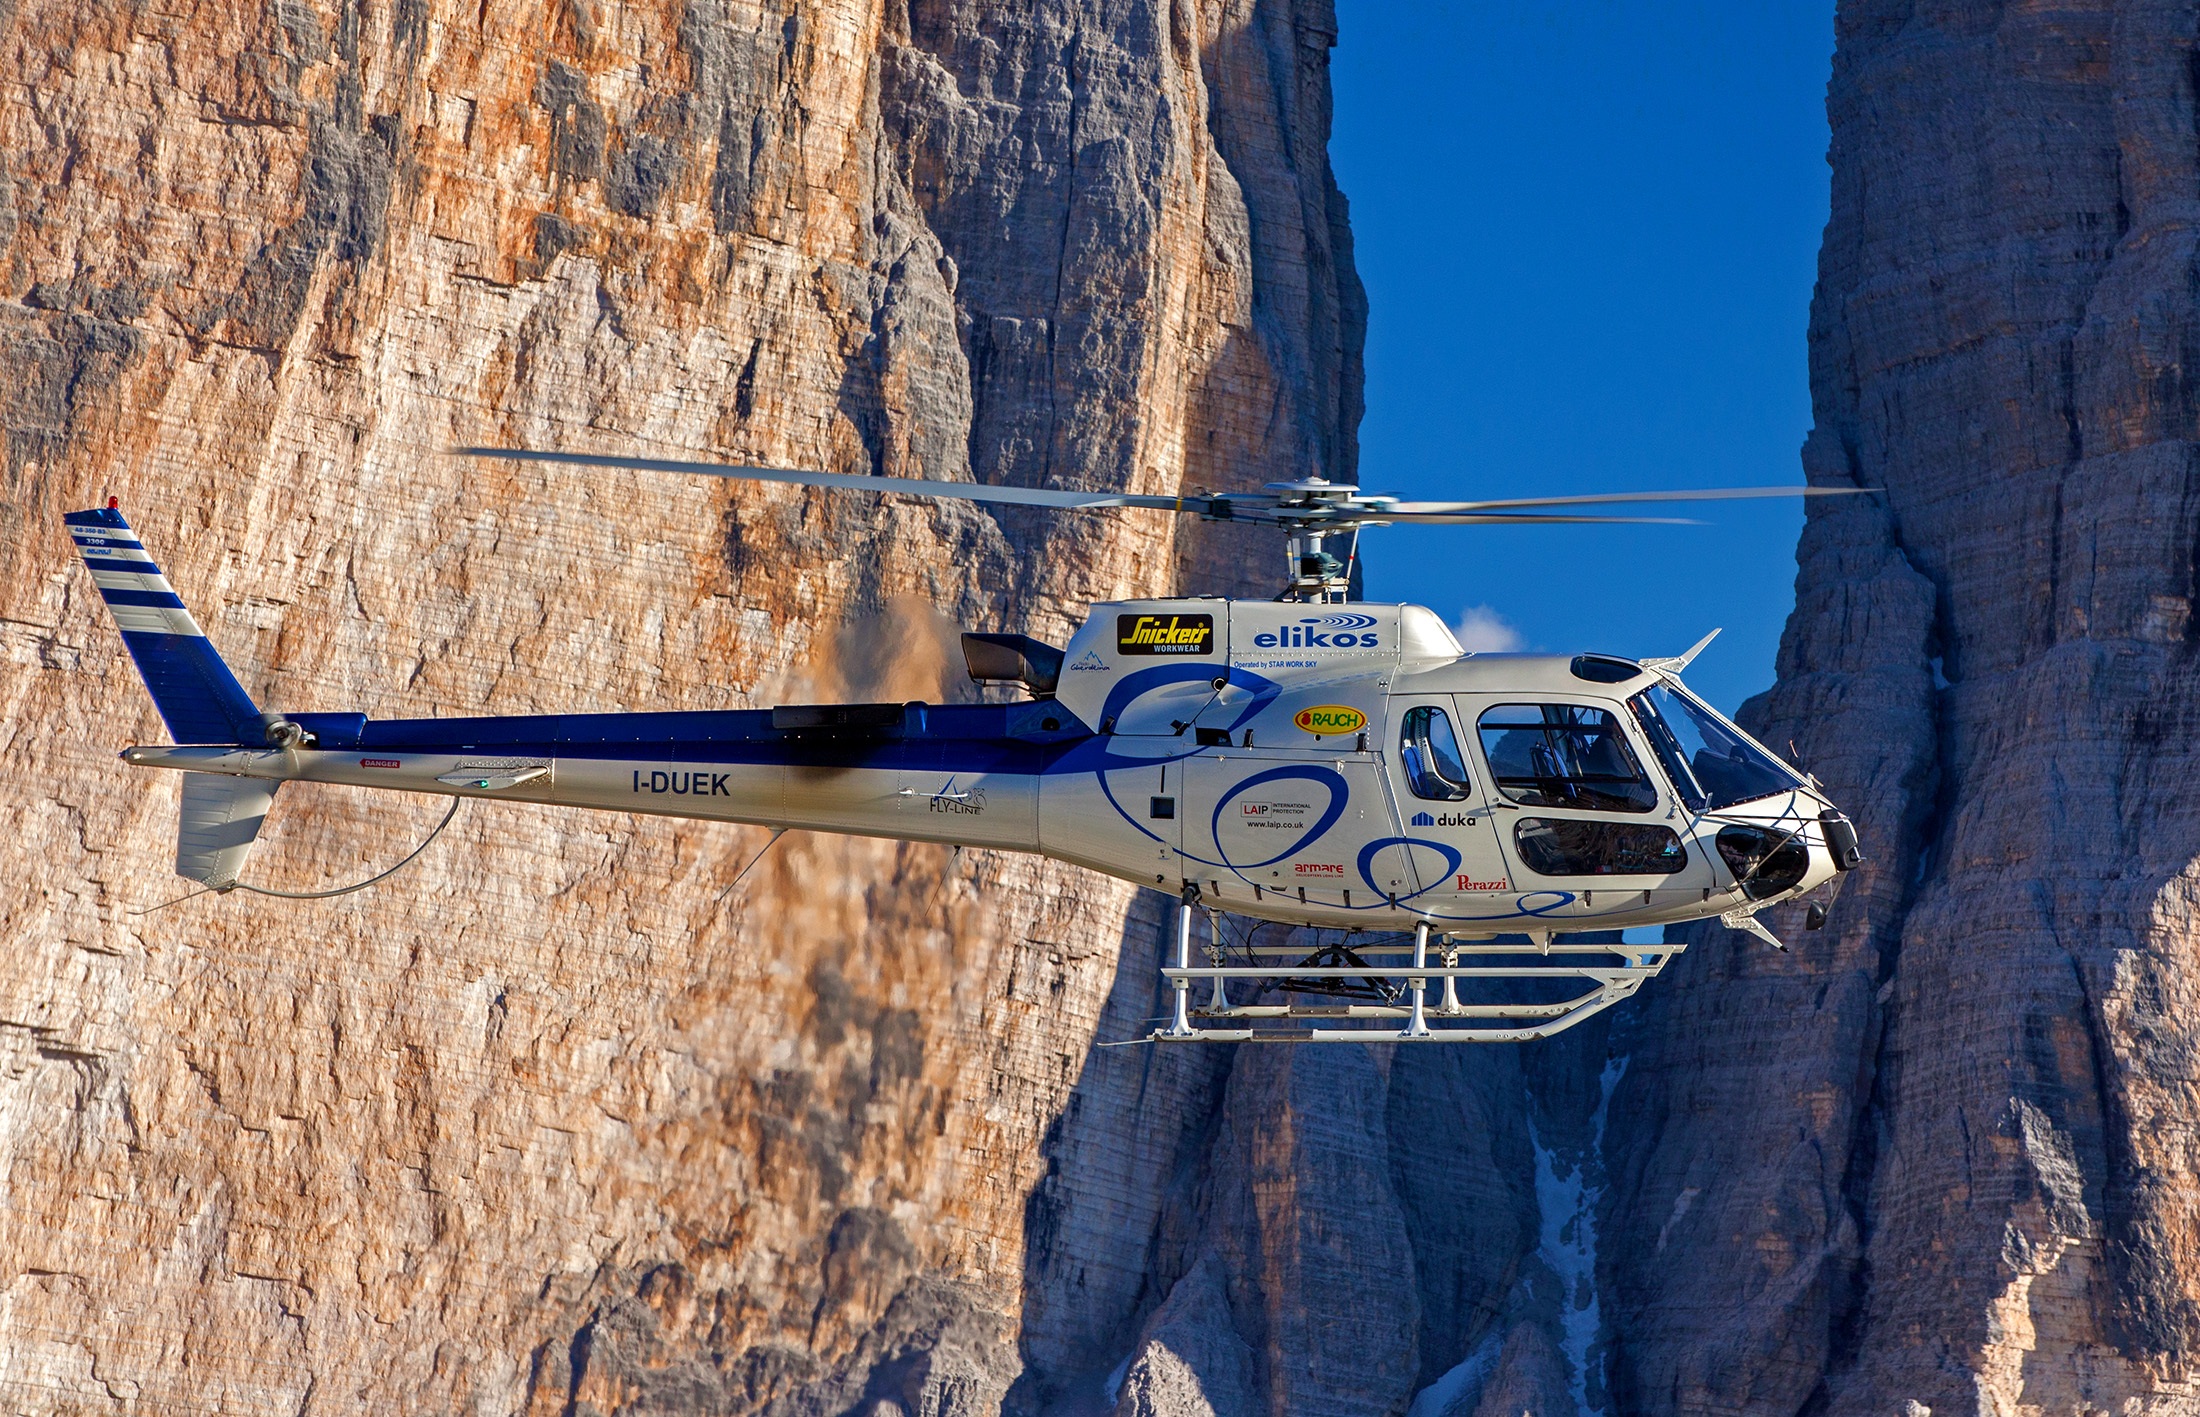 Скачать обои Eurocopter As350 Écureuil на телефон бесплатно